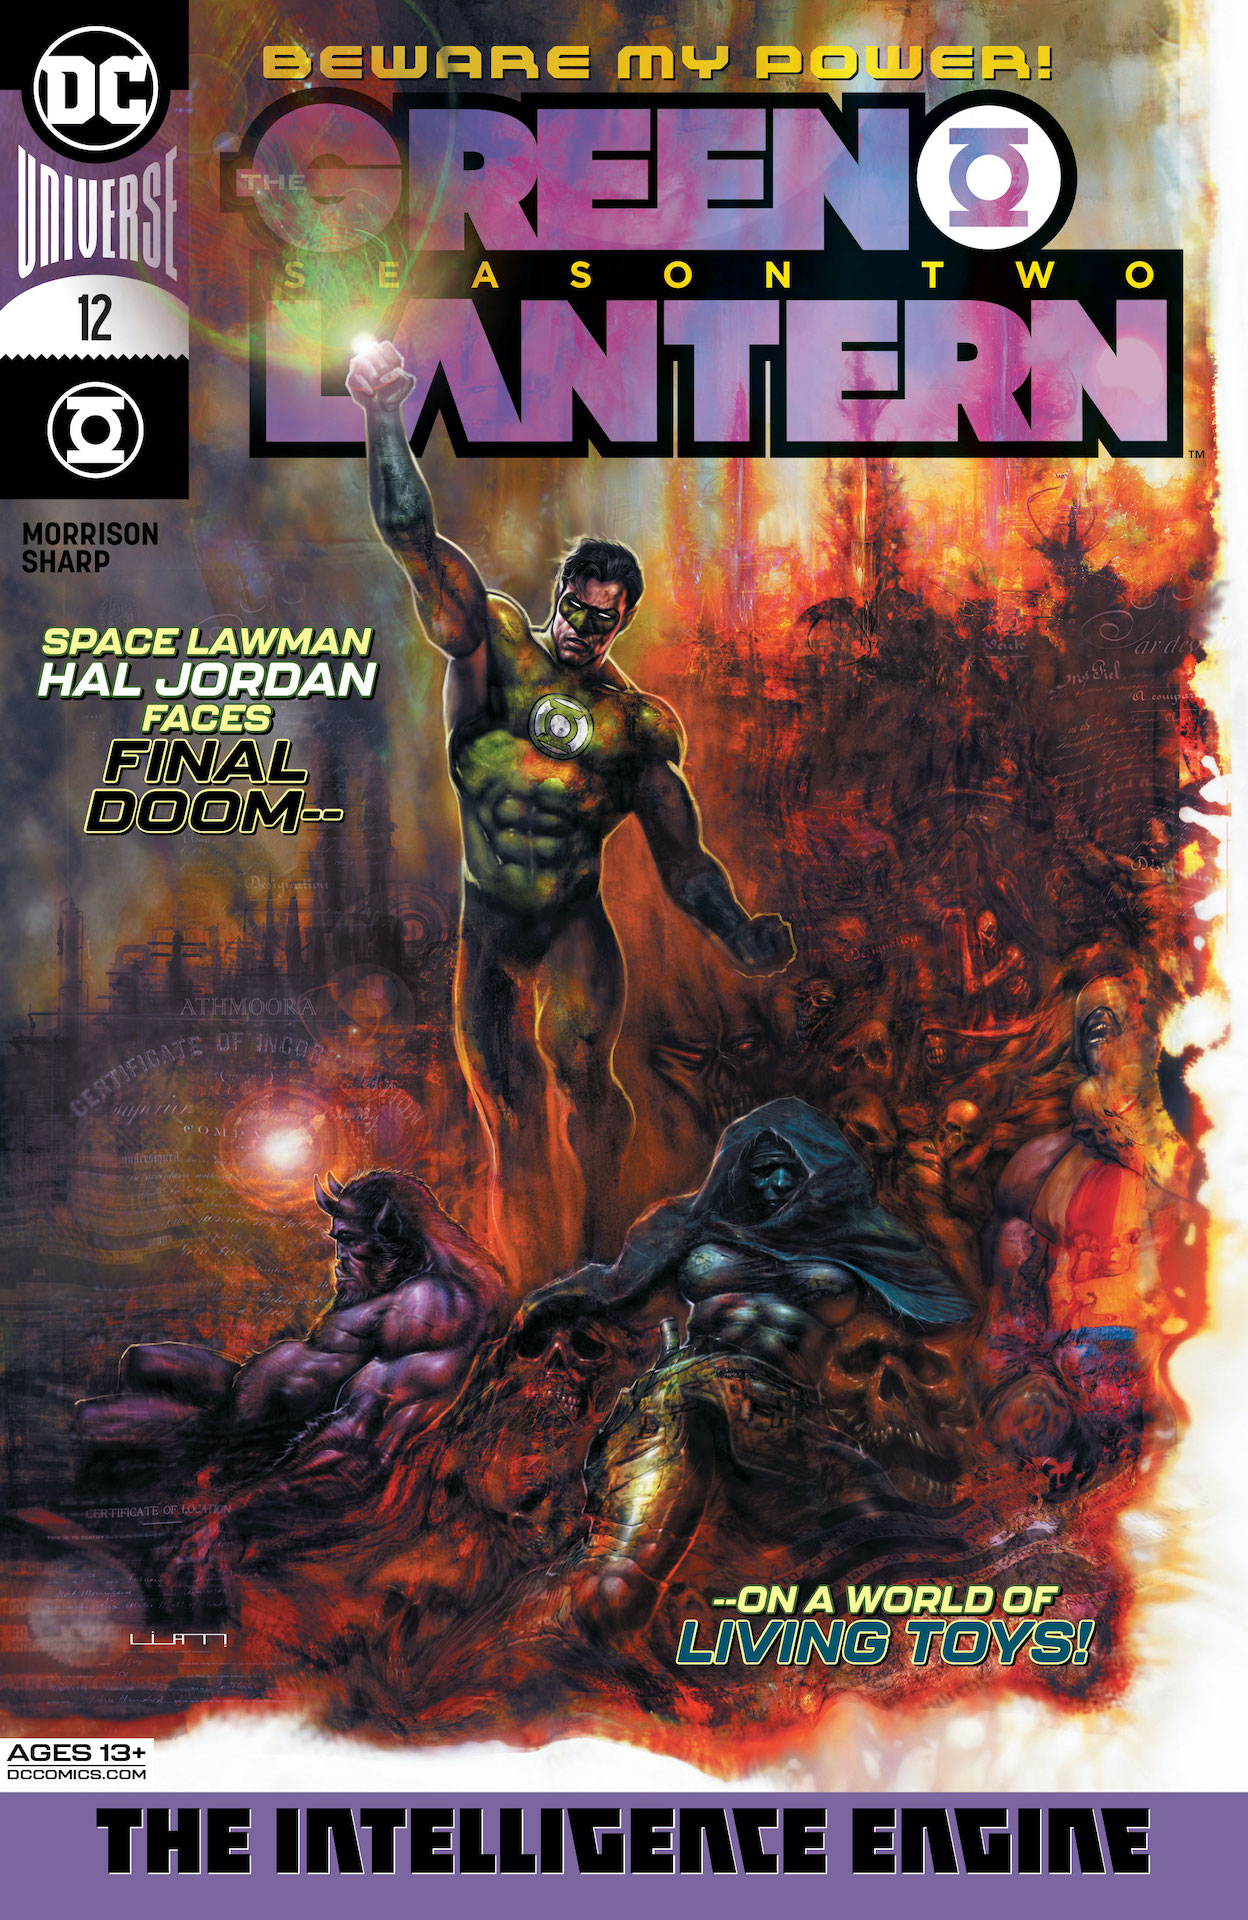 DC Preview: The Green Lantern Season Two #12